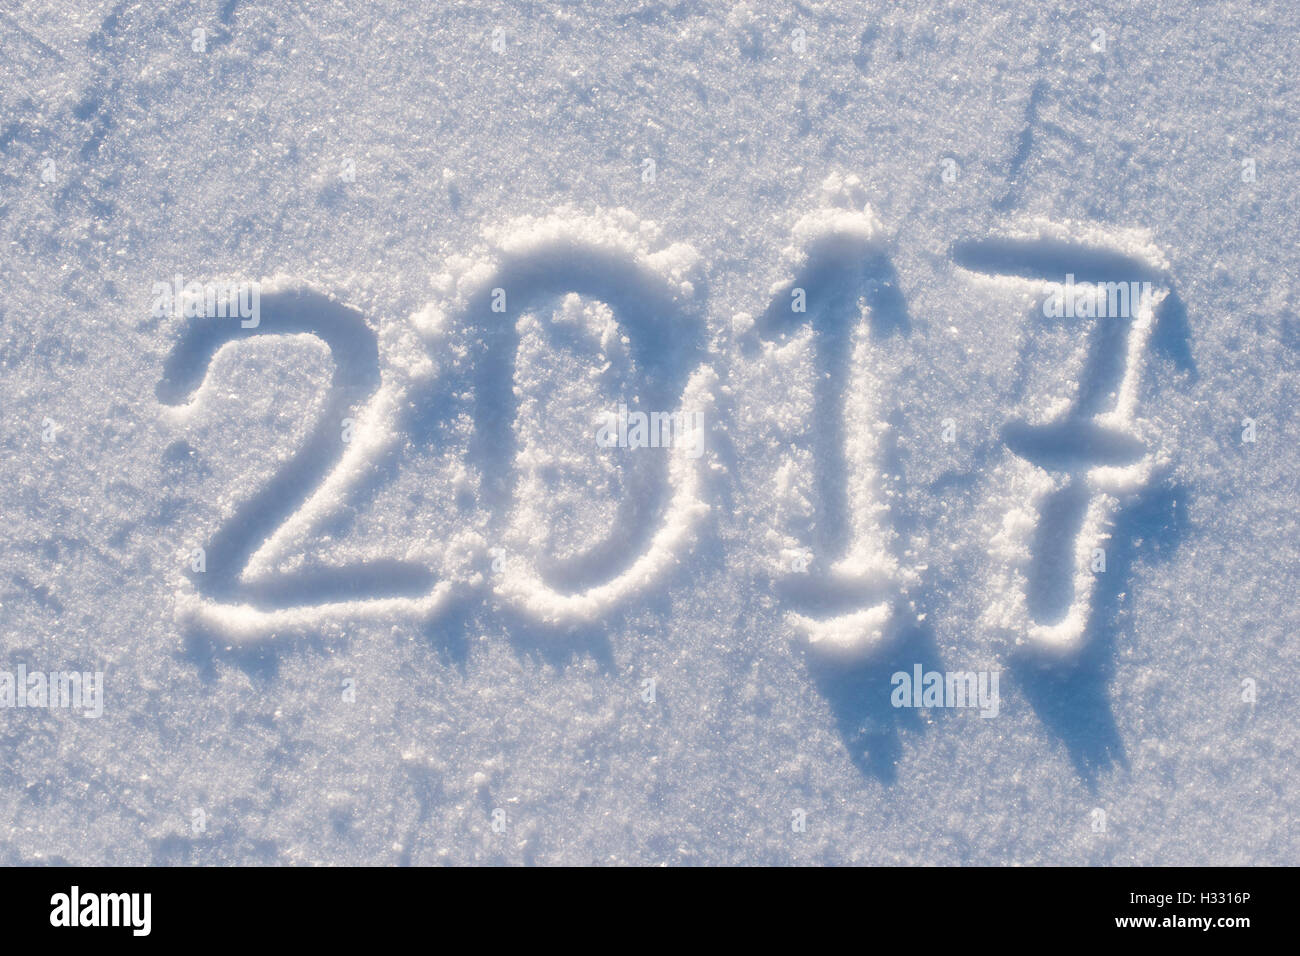 Número 2017 escrito en el campo de nieve fresca Foto de stock